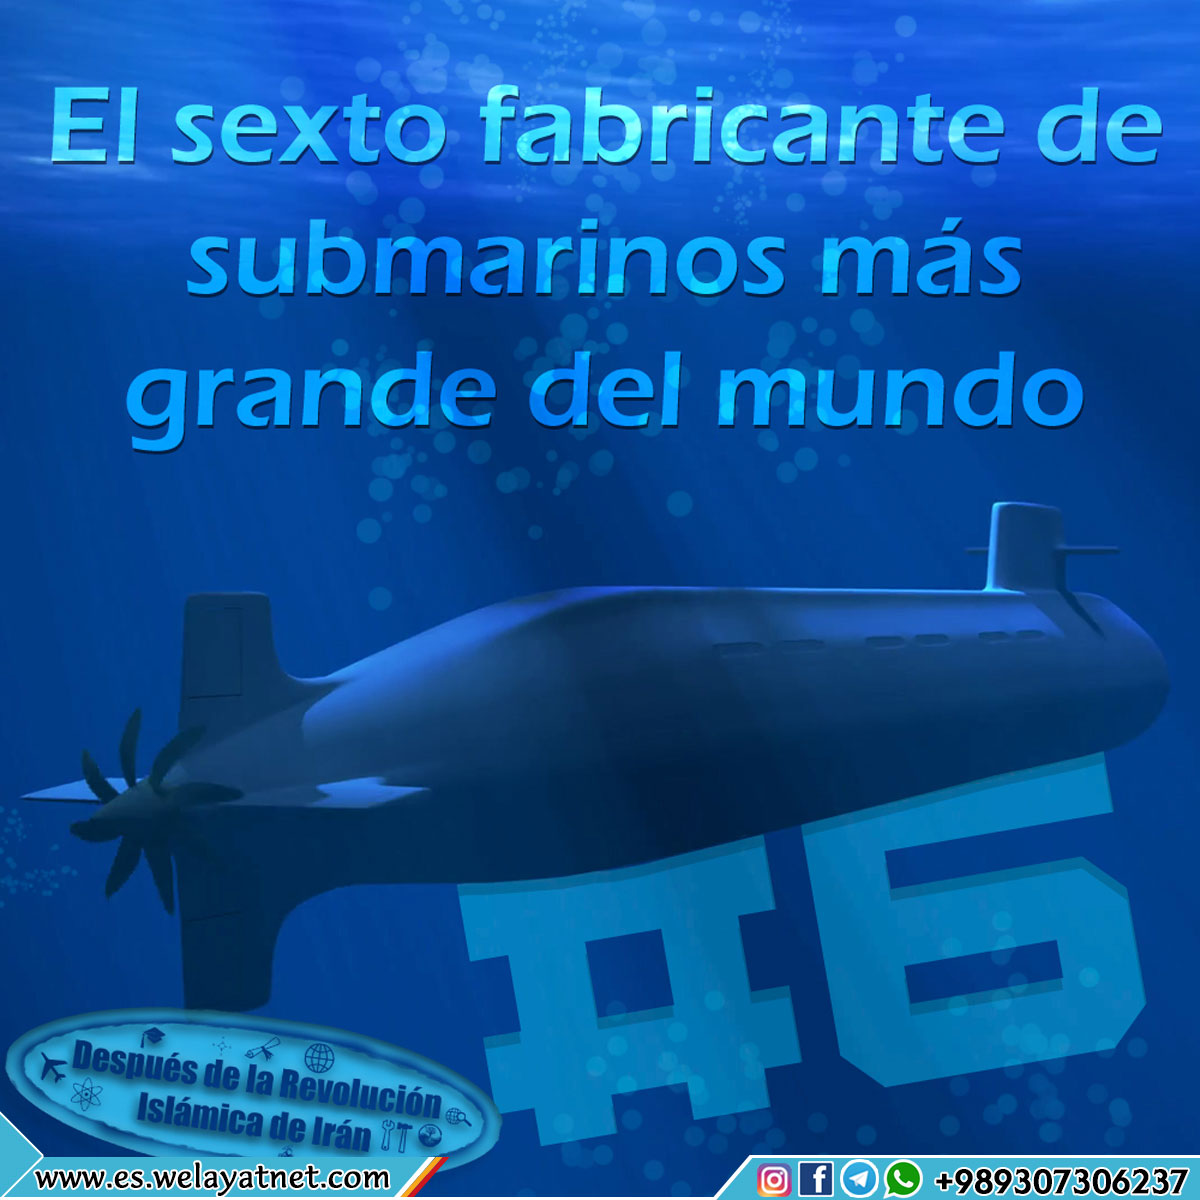 El sexto fabricante de submarinos más grande del mundo